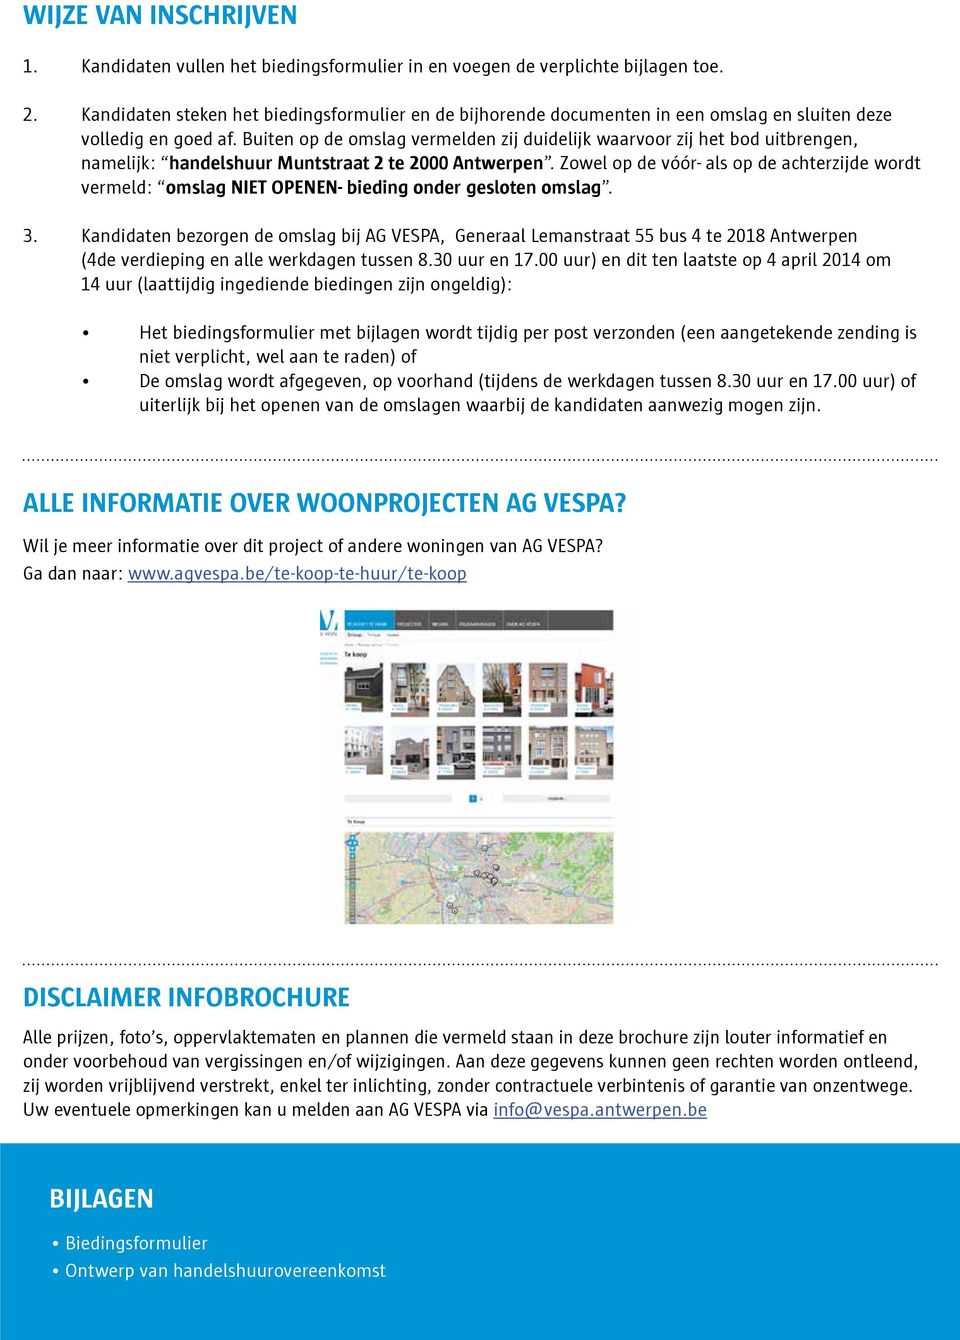 Buiten op de omslag vermelden zij duidelijk waarvoor zij het bod uitbrengen, namelijk: handelshuur Muntstraat 2 te 2000 Antwerpen.